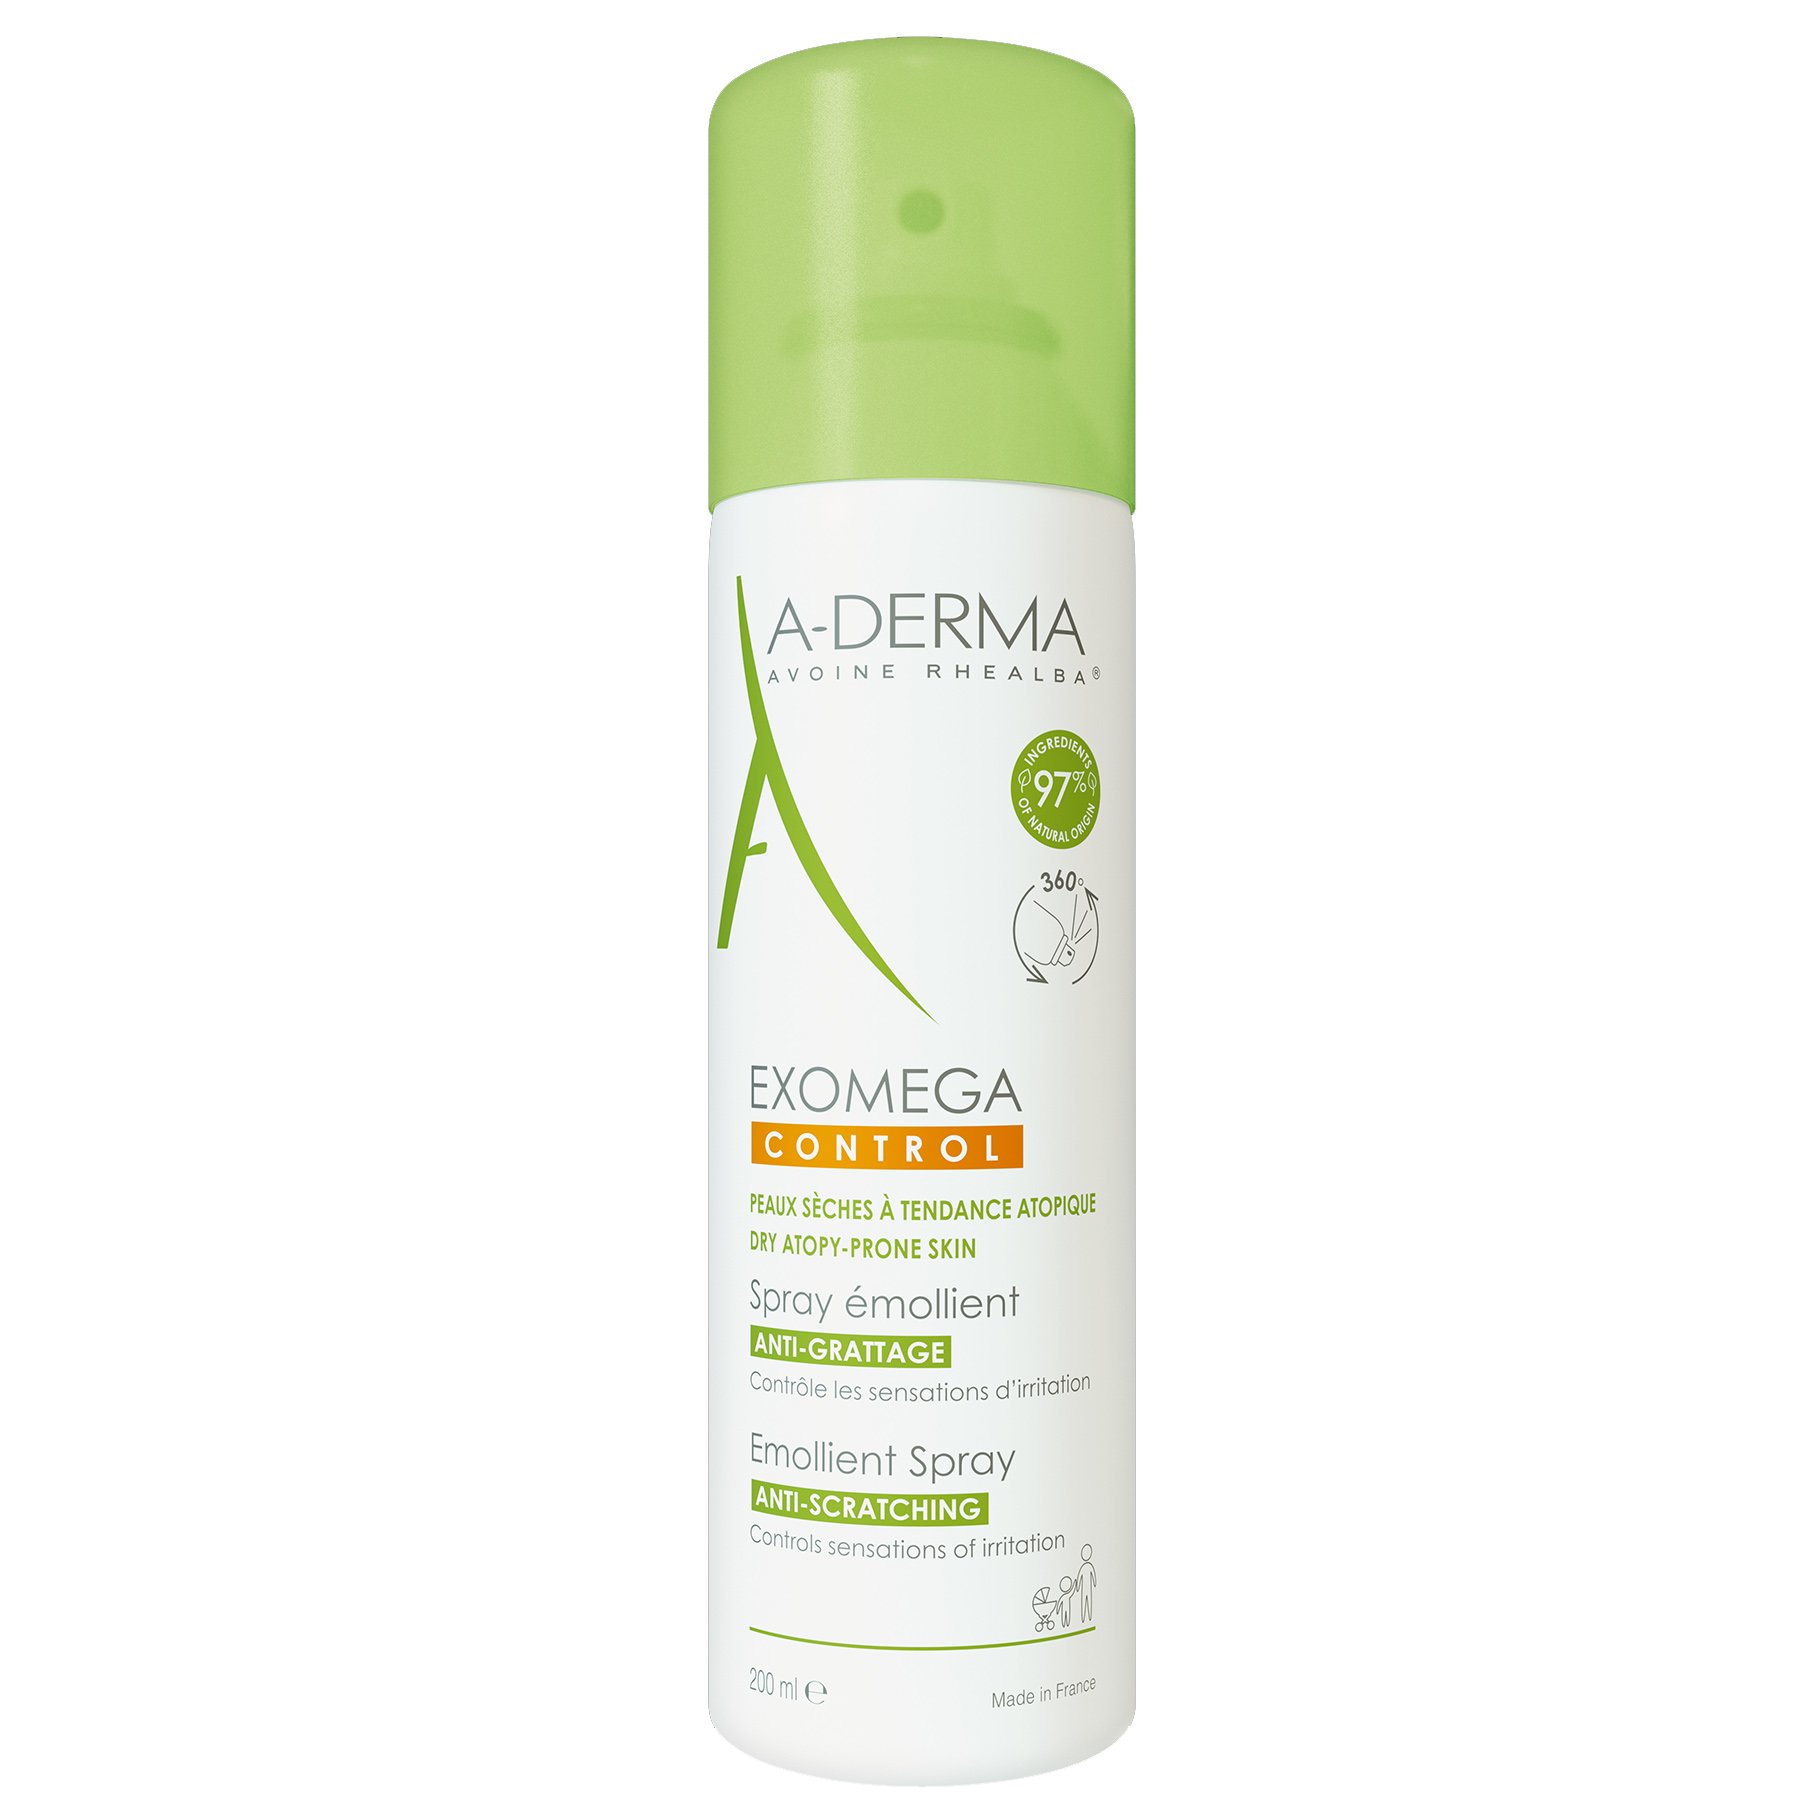 A-Derma Exomega Control Emollient Καταπραϋντικό Spray Κατά της Φαγούρας για Ατοπικό ή Πολύ Ξηρό Δέρμα 200ml